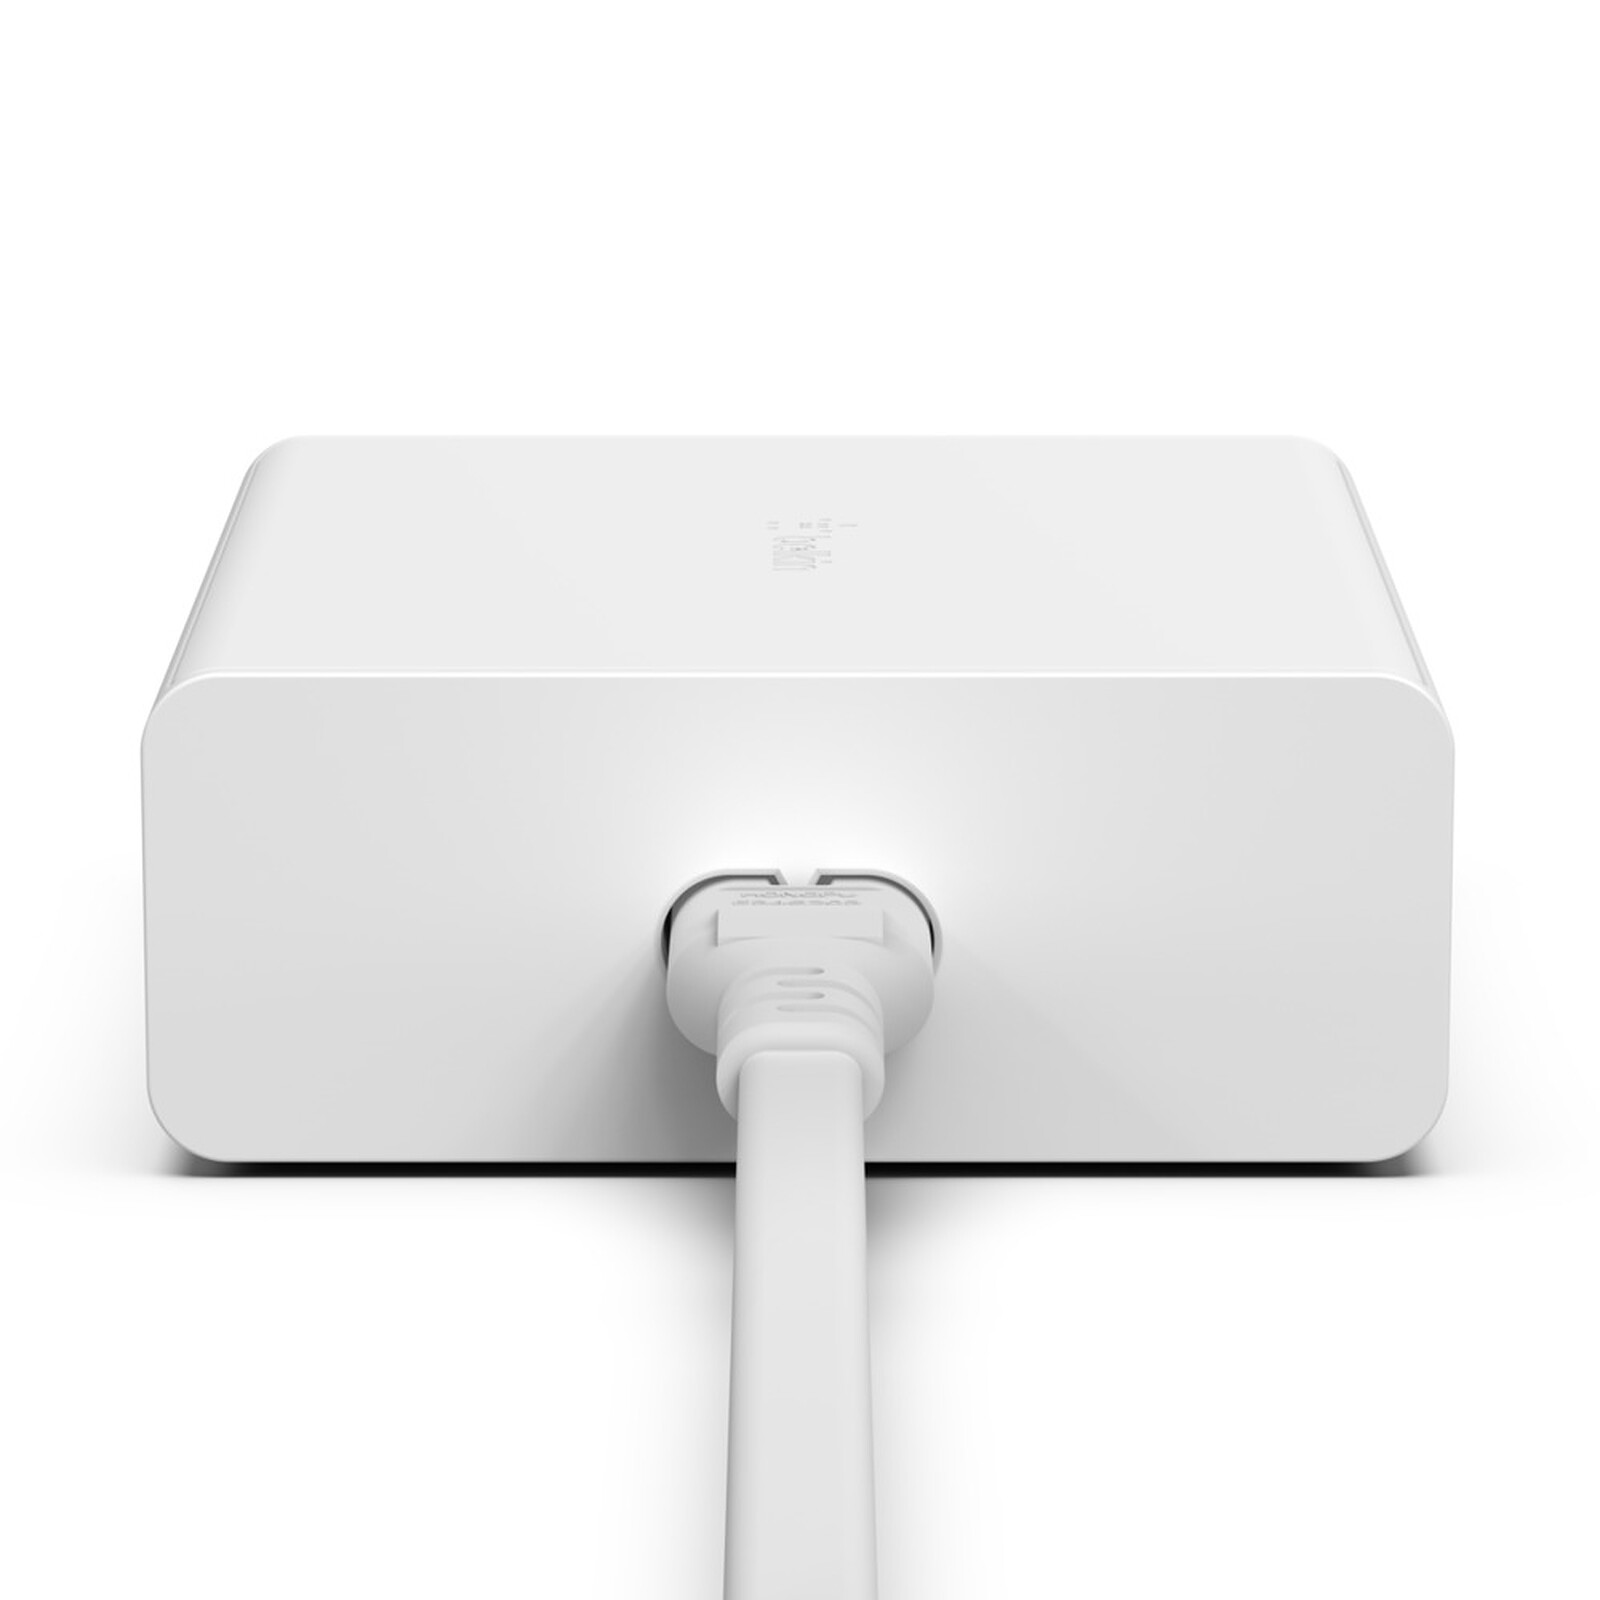 Chargeur secteur Belkin USB-C 25W pour iPhone et iPad